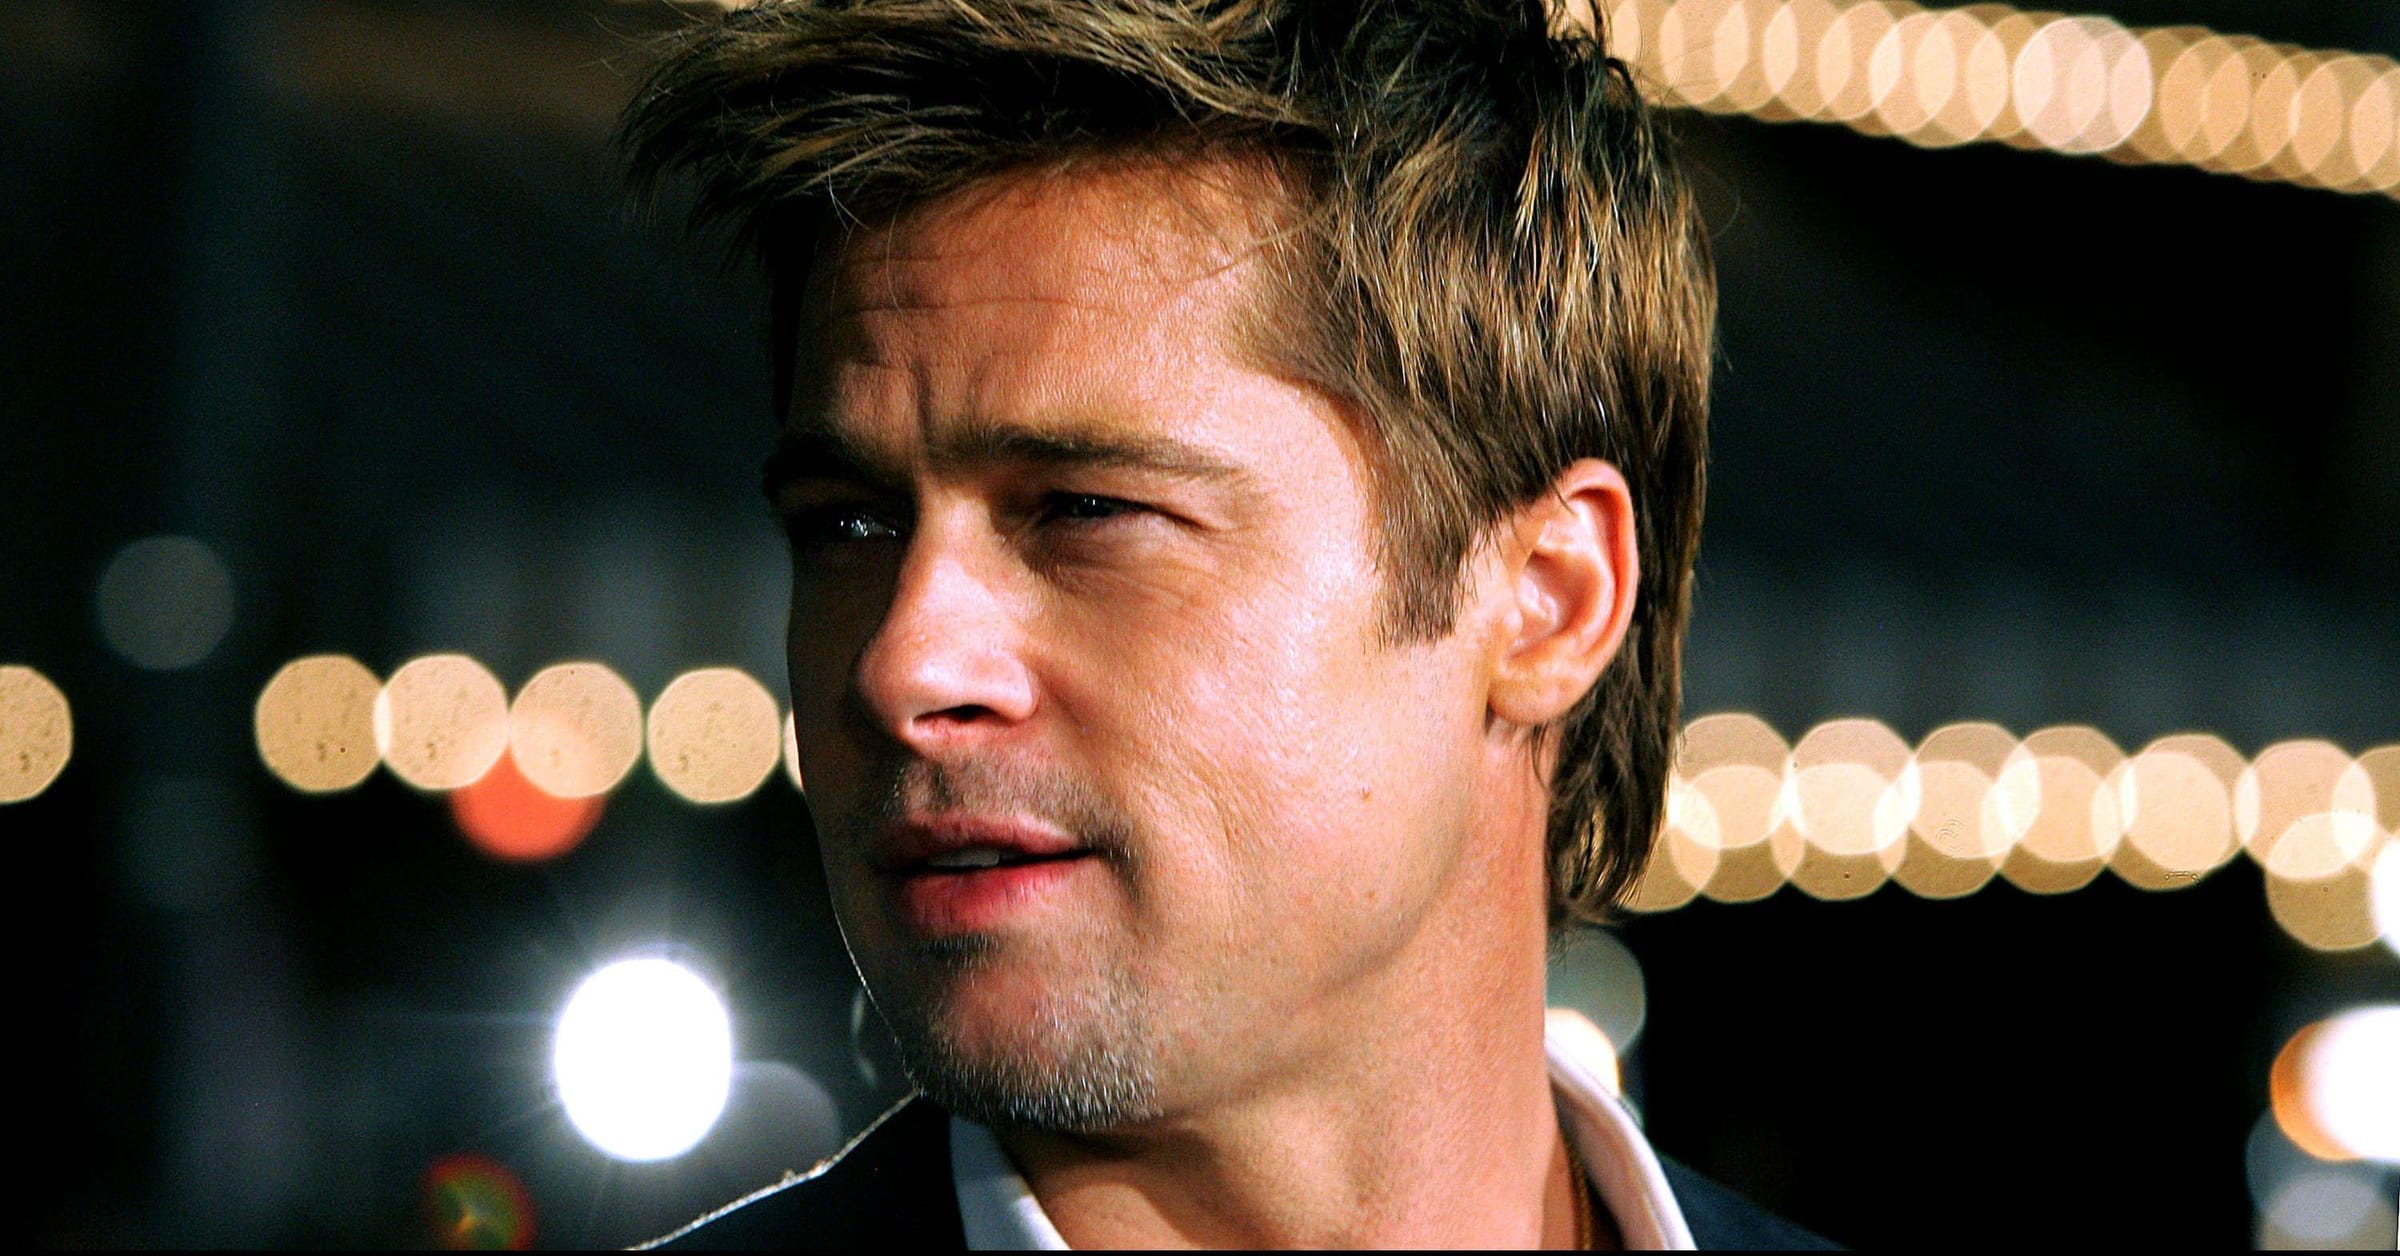 Brad Pitt's star-studded dating history